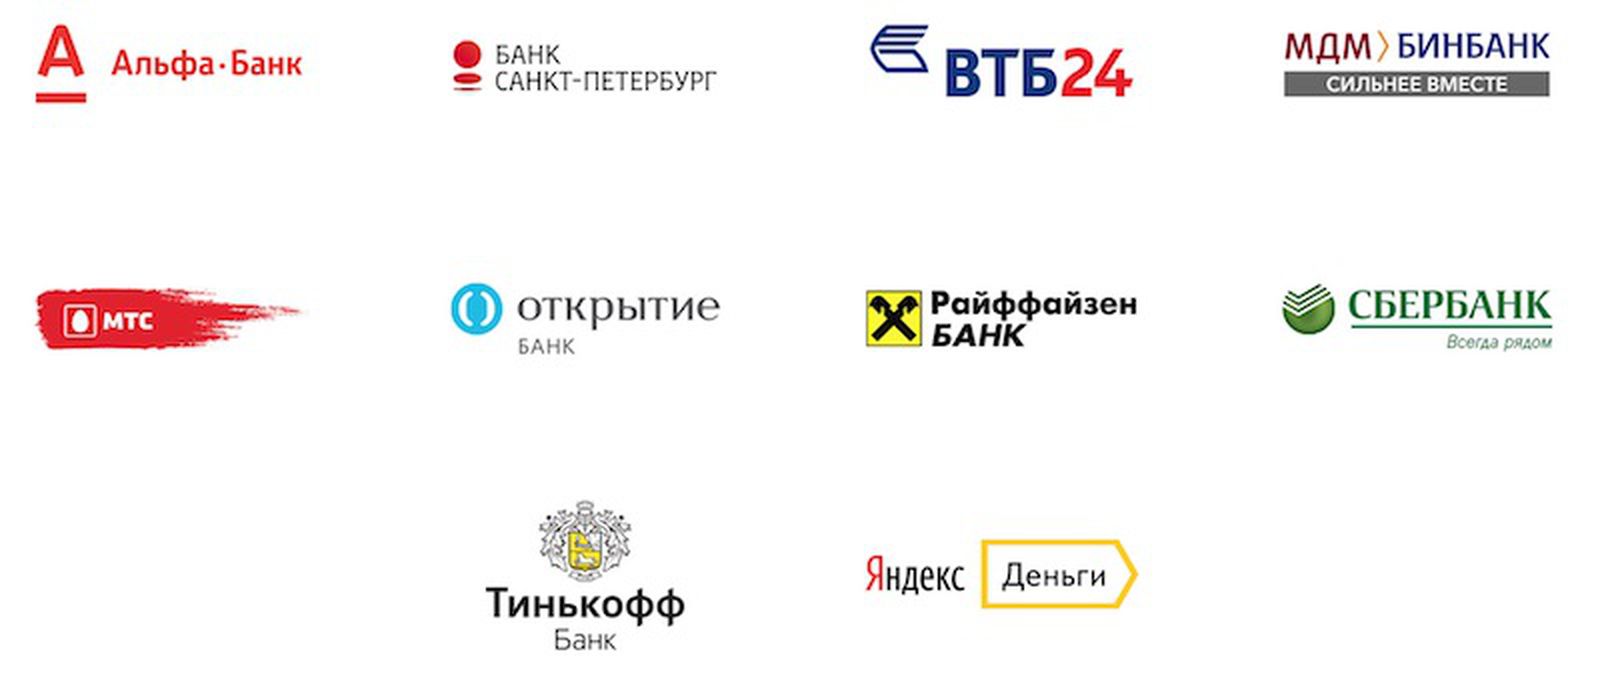 Банки партнеры банка рф. Банки партнеры. Российские банки. Список партнеров. Банки партнеры список.